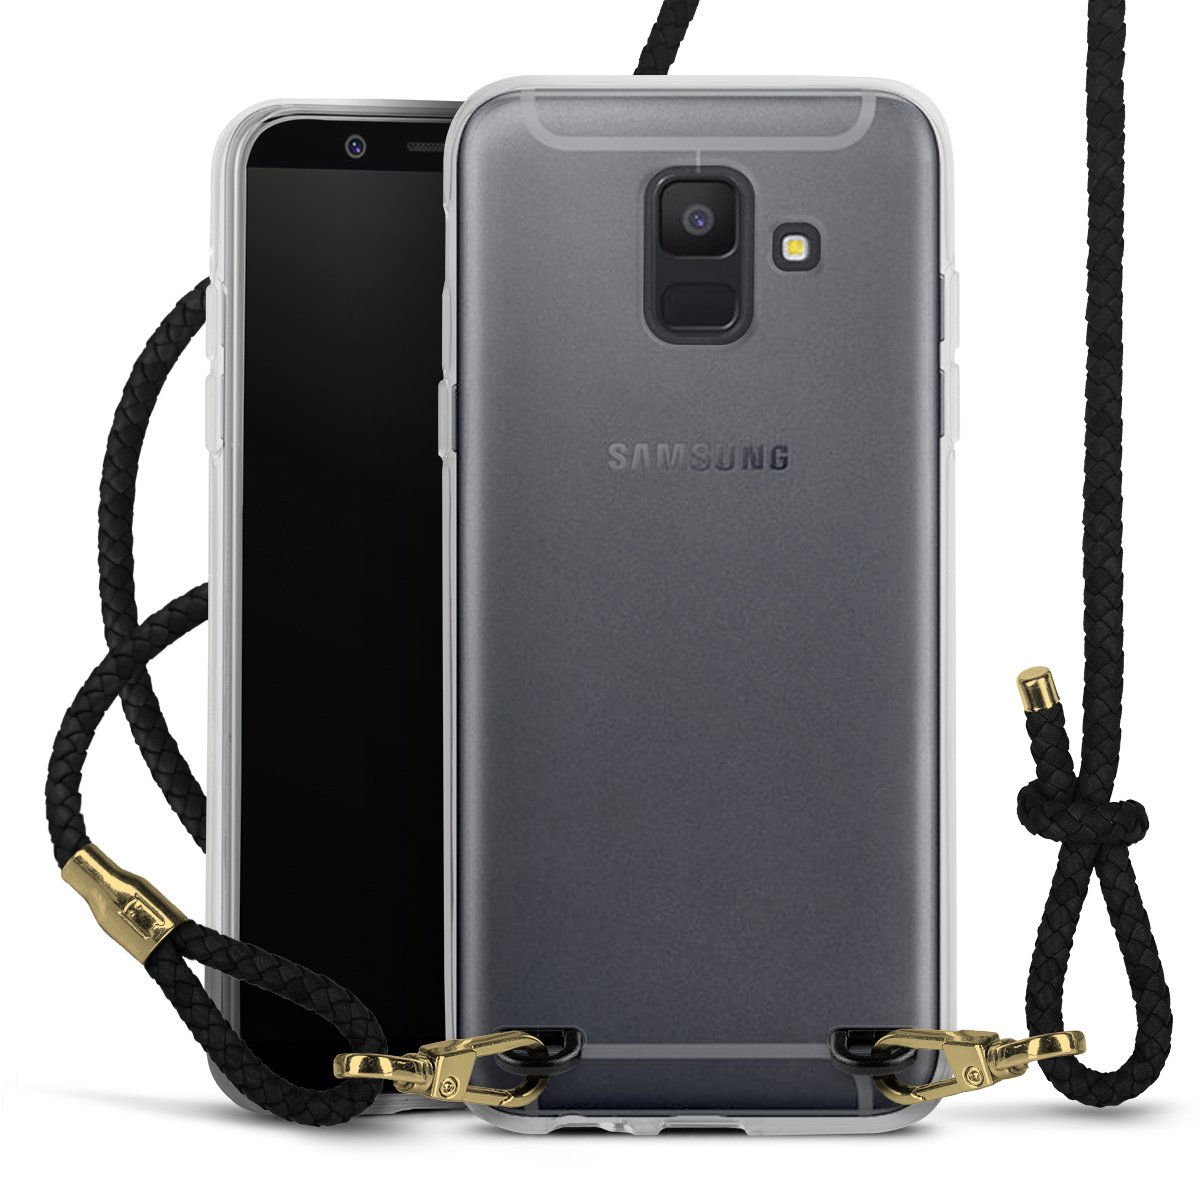 Geen Design Transparant met koord (zwart/goud) voor Samsung Galaxy van DeinDesign